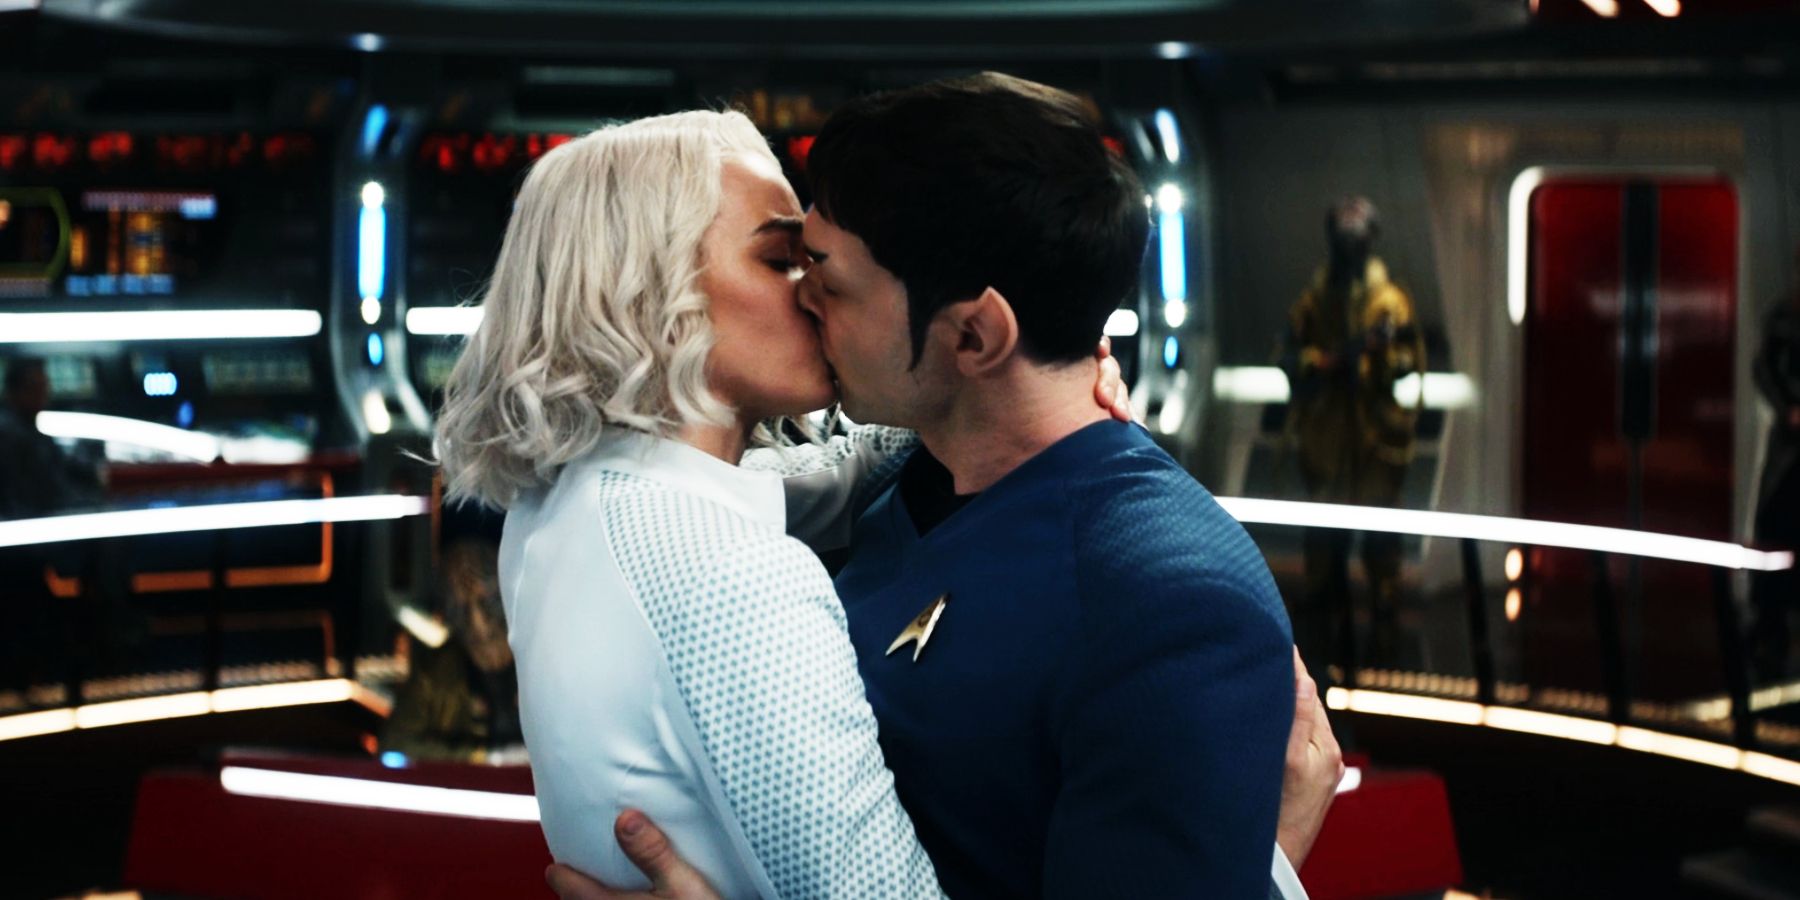 Nurse Chapel and Mr Spock kiss in Star Trek Strange New Worlds